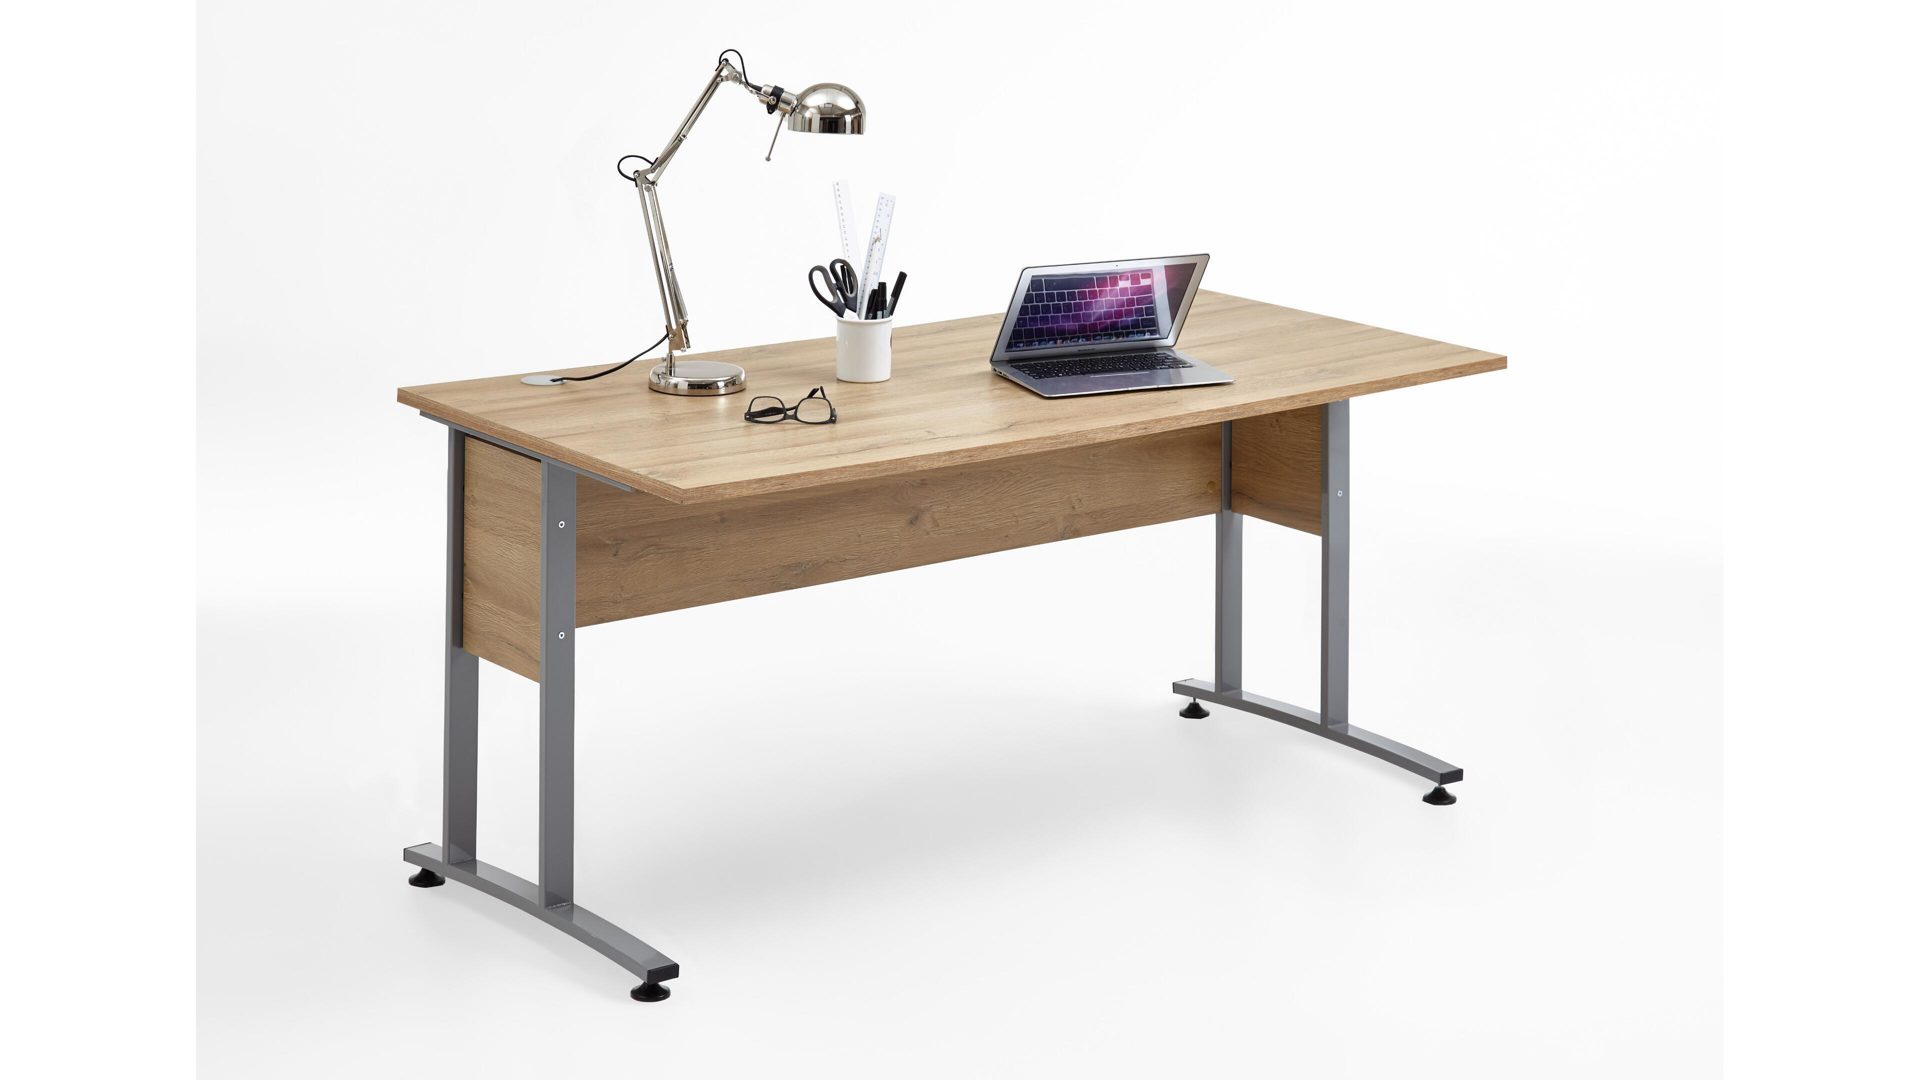 Schreibtisch Fmd furniture aus Holz in Holzfarben Schreibtisch als Büromöbel alteichefarbene Kunststoffoberflächen – Länge ca. 160 cm